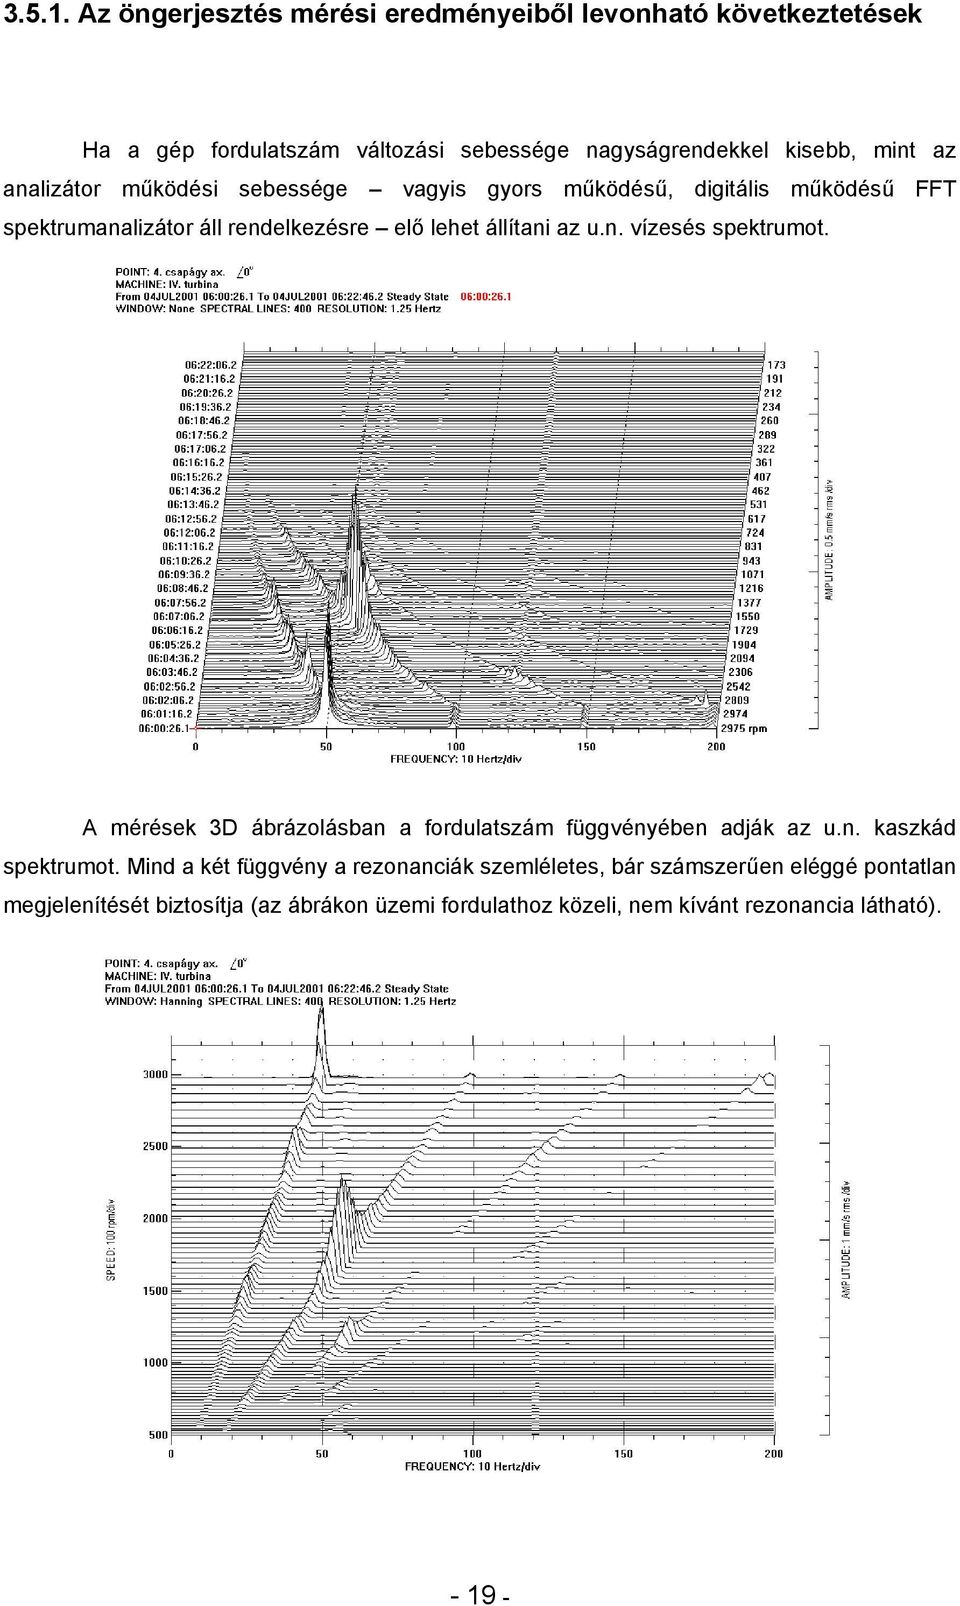 analizátor működési sebessége vagyis gyors működésű, digitális működésű FFT spektrumanalizátor áll rendelkezésre elő lehet állítani az u.n. vízesés spektrumot.